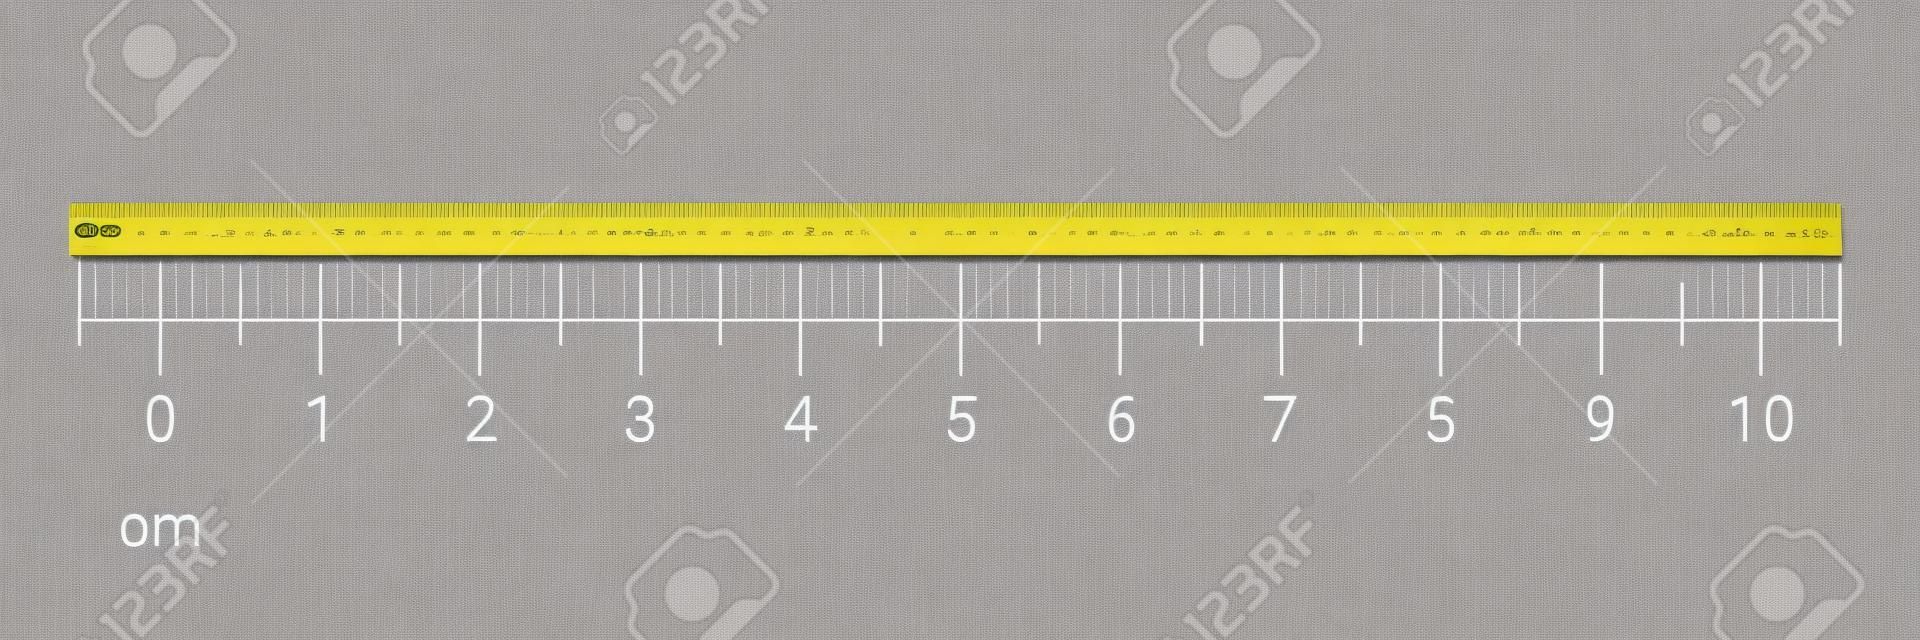 숫자 눈금이 있는 10센티미터 눈금자 측정 도구입니다. 밀리미터 그리드 시스템이 있는 벡터 cm 차트